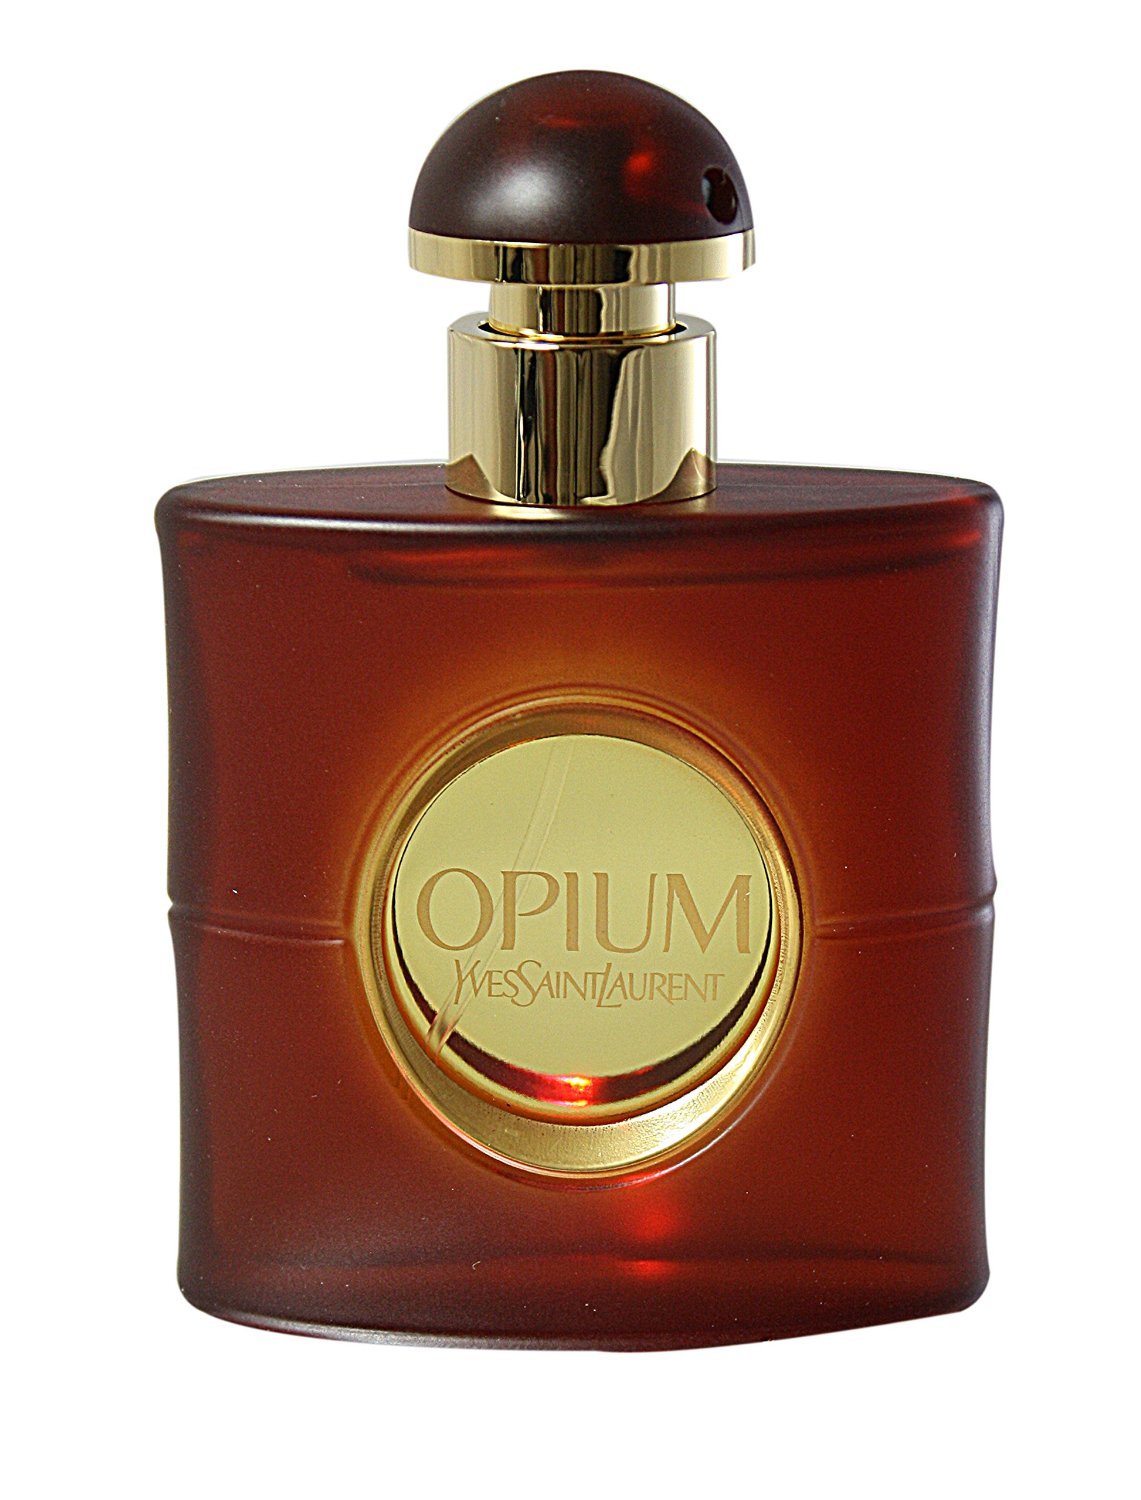 Yves Saint Laurent / Opium - Eau de Toilette 50 ml - ShopMania